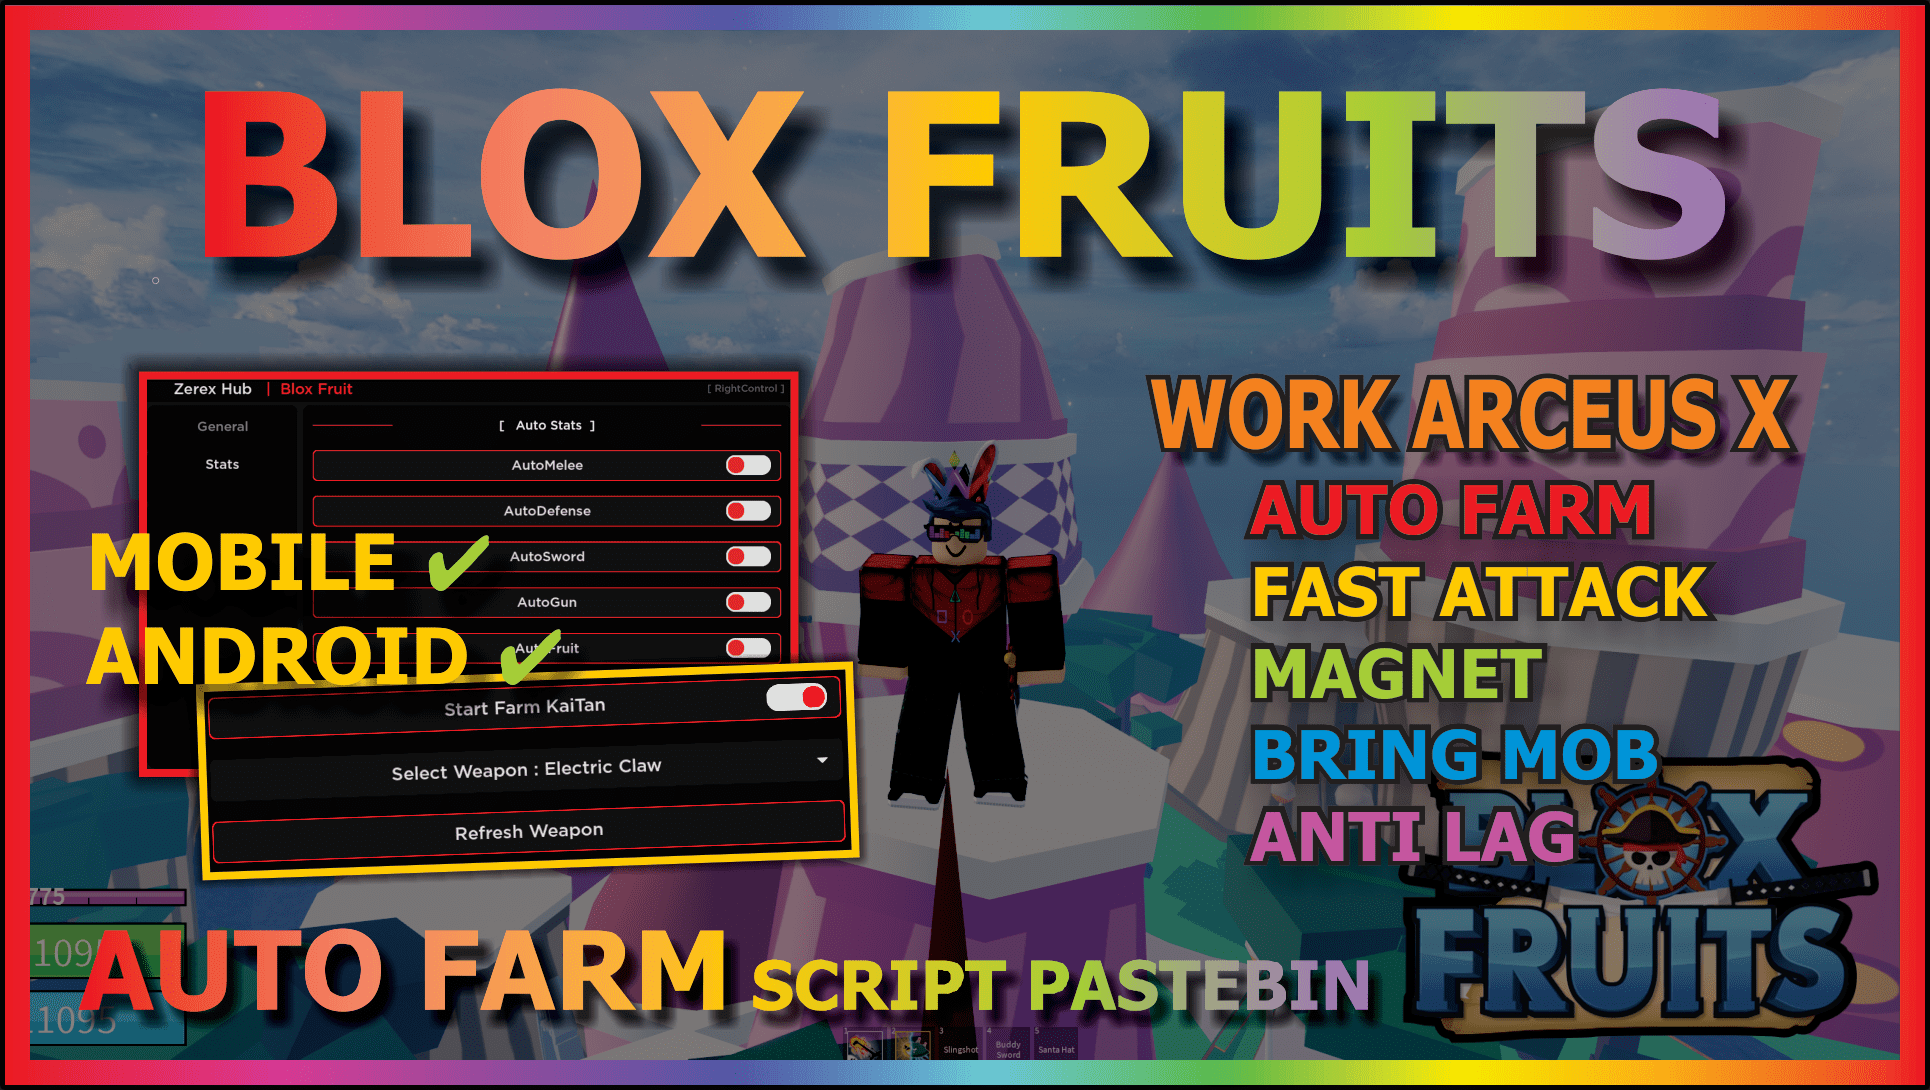 Arceus X Blox Fruit Script 